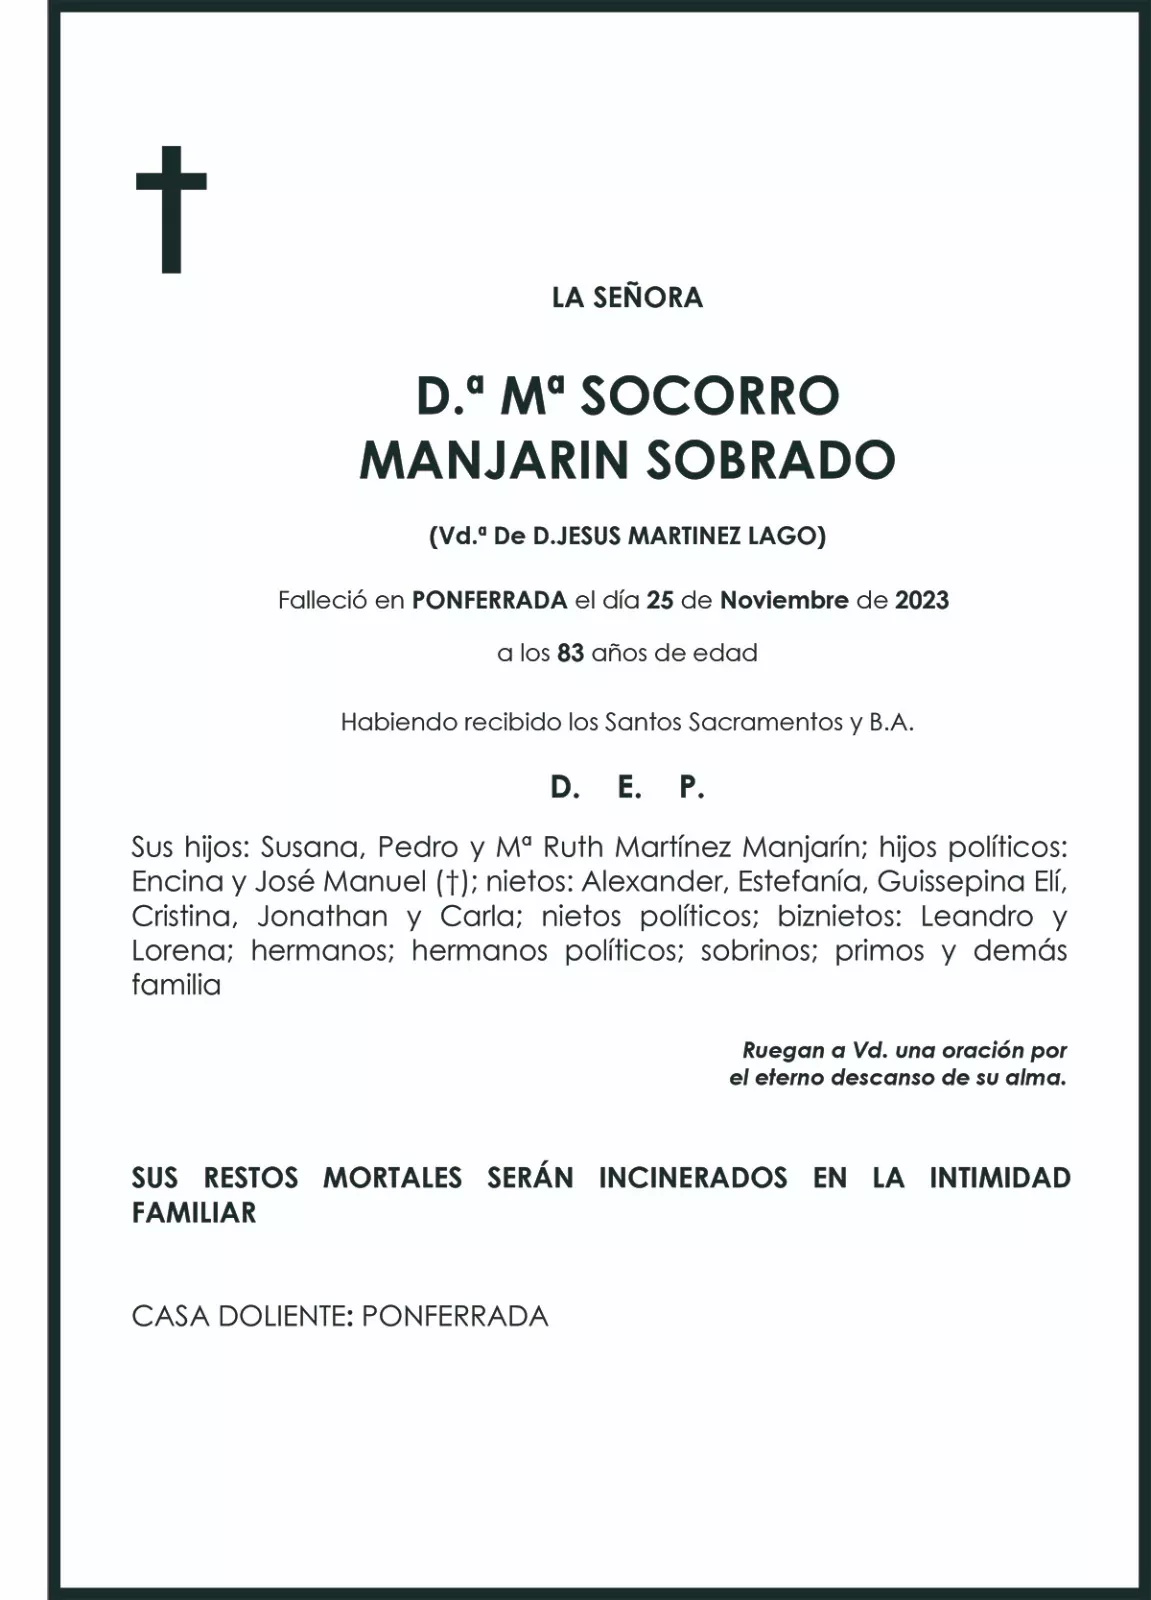 MARIA SOCORRO MANJARIN SOBRADO